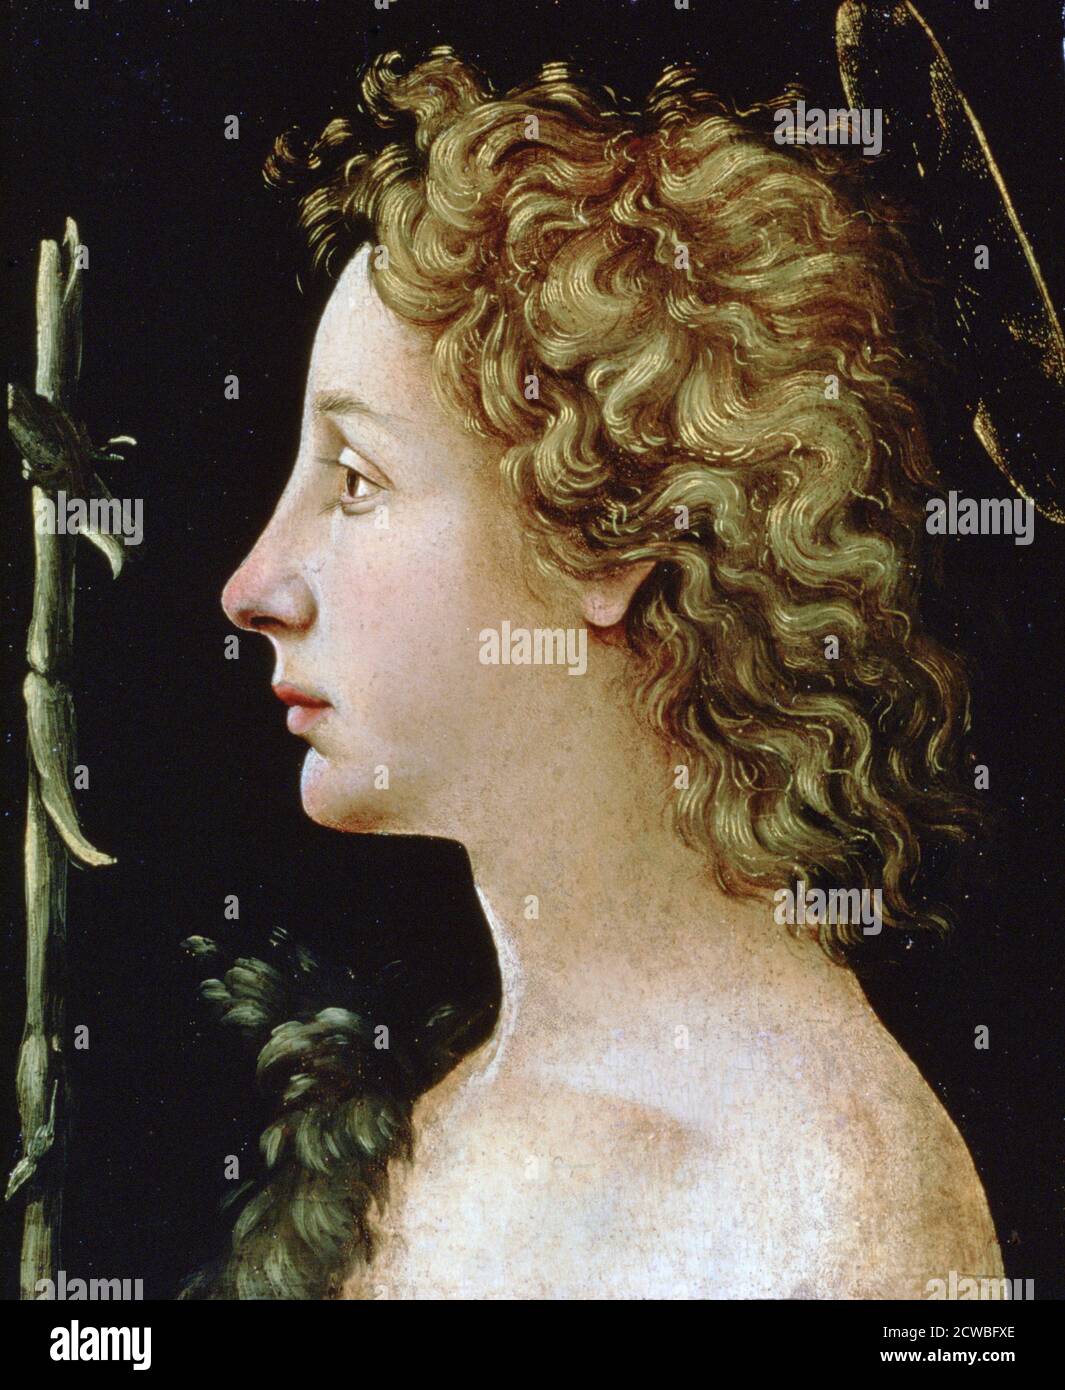 Le Jeune Saint-Jean-Baptiste, c1482-1522. Artiste: Piero di Cosimo. Piero di Cosimo (1462-1522) est un peintre italien de la Renaissance. Banque D'Images